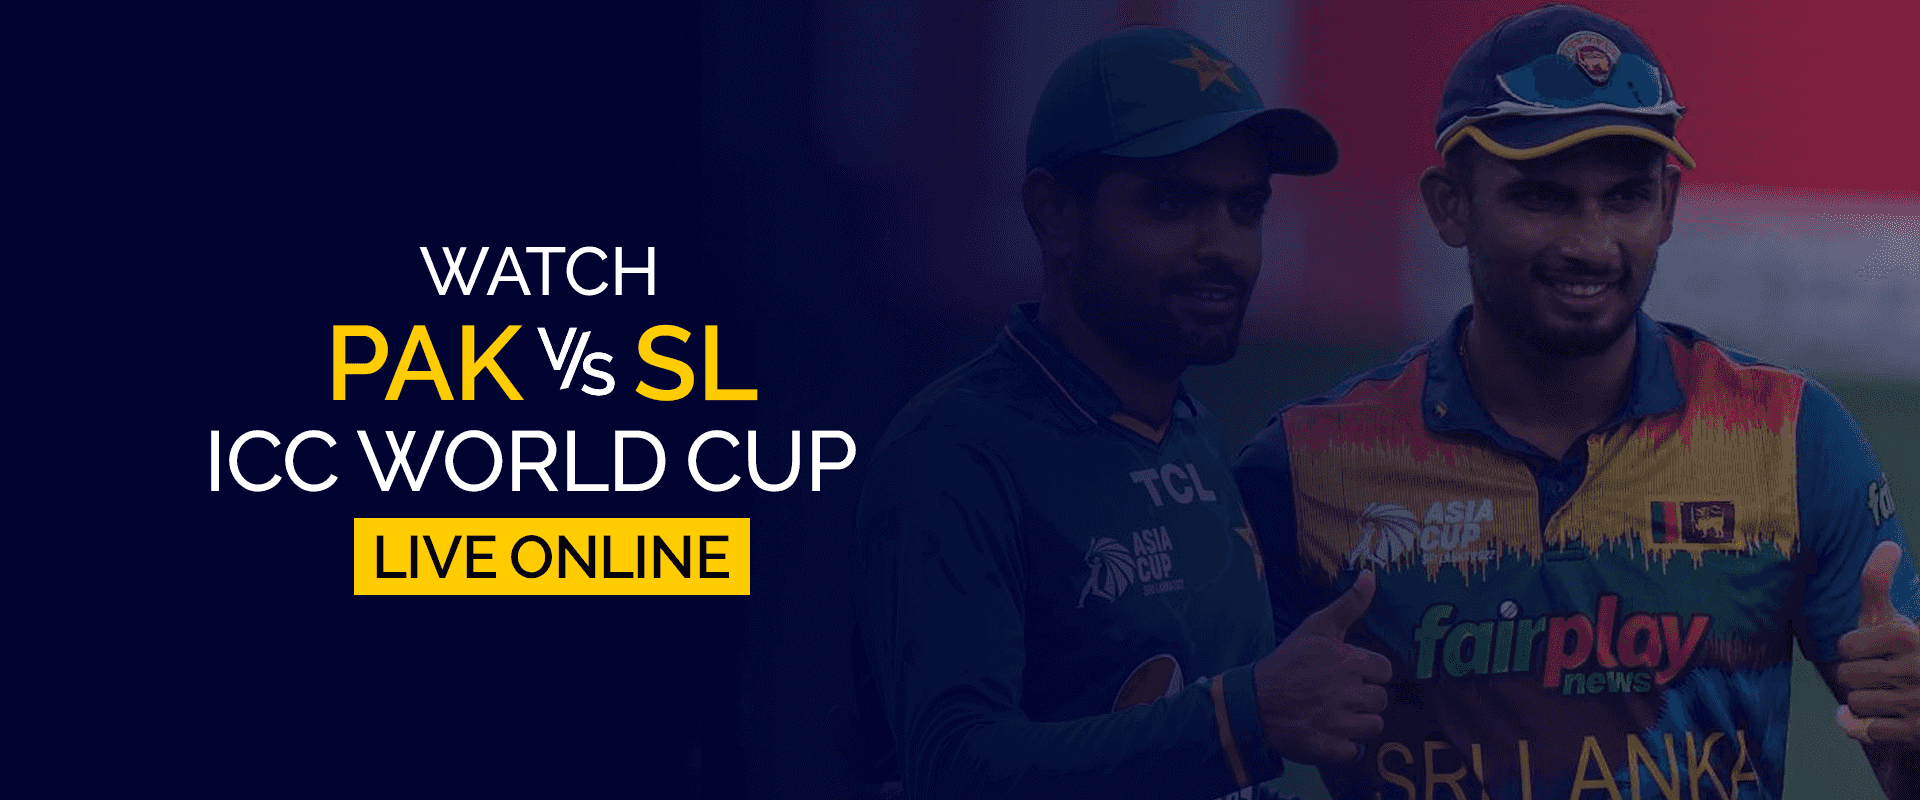 Mira la Copa del Mundo PAK vs SL ICC en vivo en línea